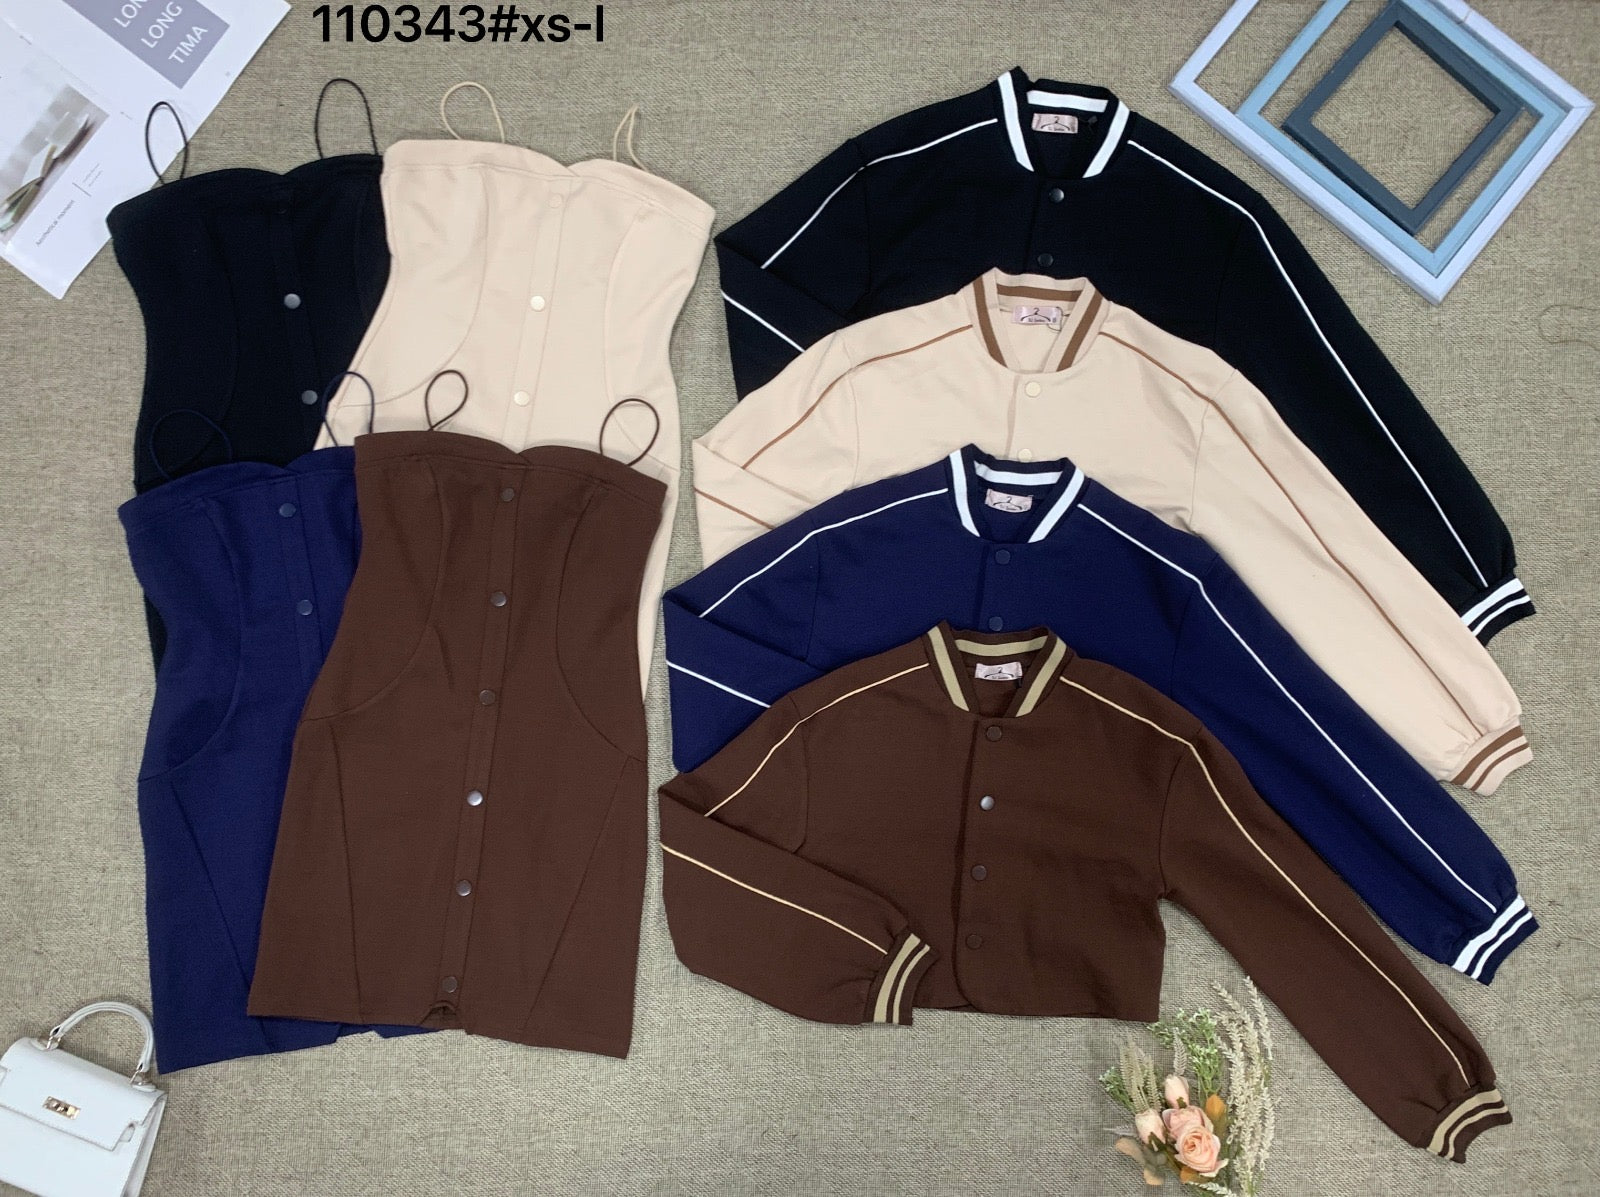 【SS110343】两件式气质罗马棒球套装 长袖外套➕细带连身裙子